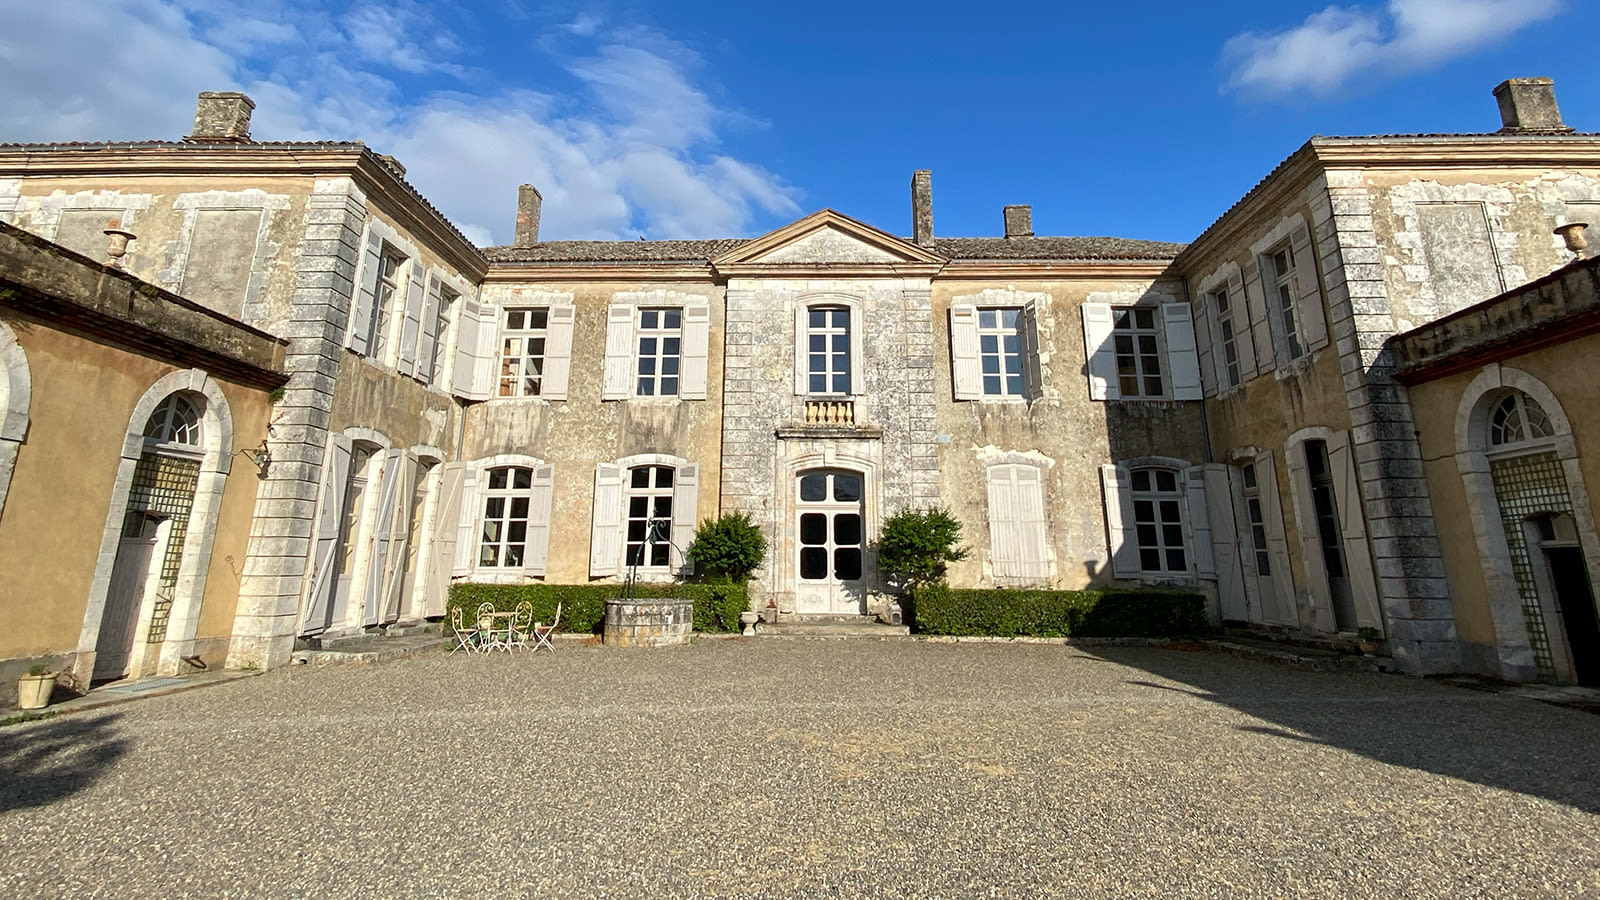 ثنائي أمريكي يشتريان قصرًا يتكون من 48 غرفة في فرنسا.. ما الذي يخططان له؟